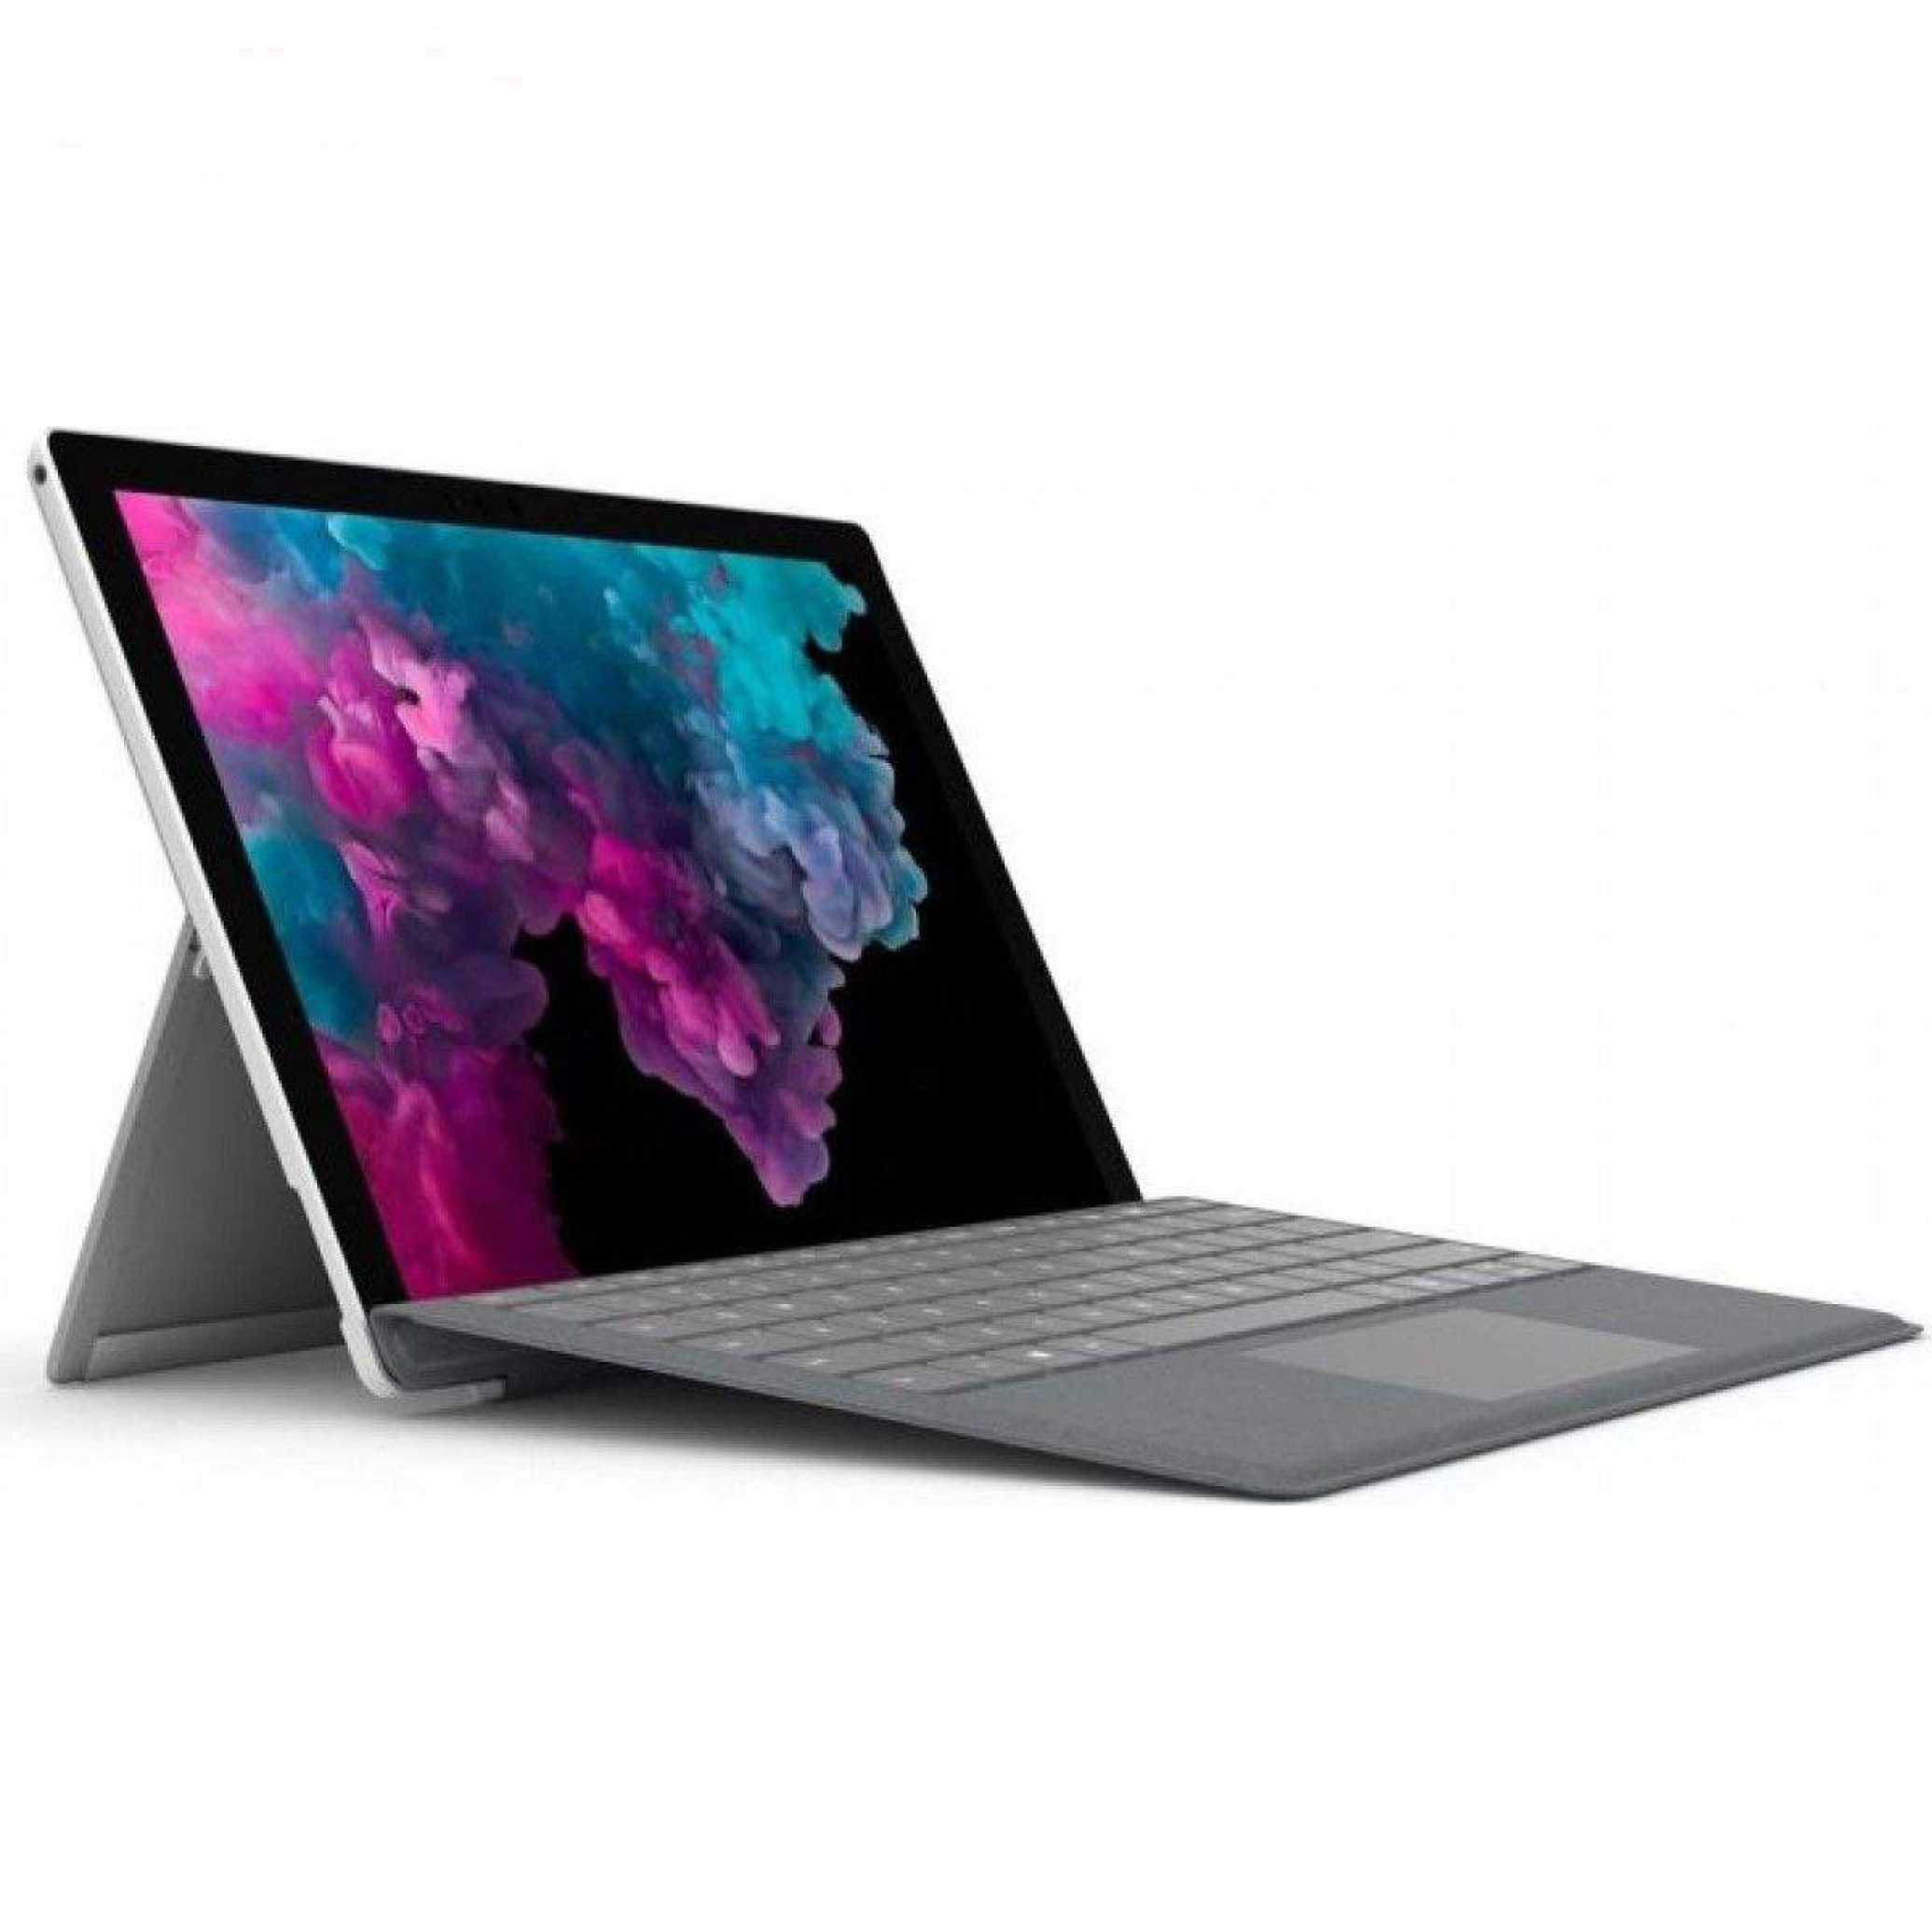  خرید تبلت سرفیس پرو 6 ، Microsoft Surface Pro 6 | لاکچری لپ تاپ 